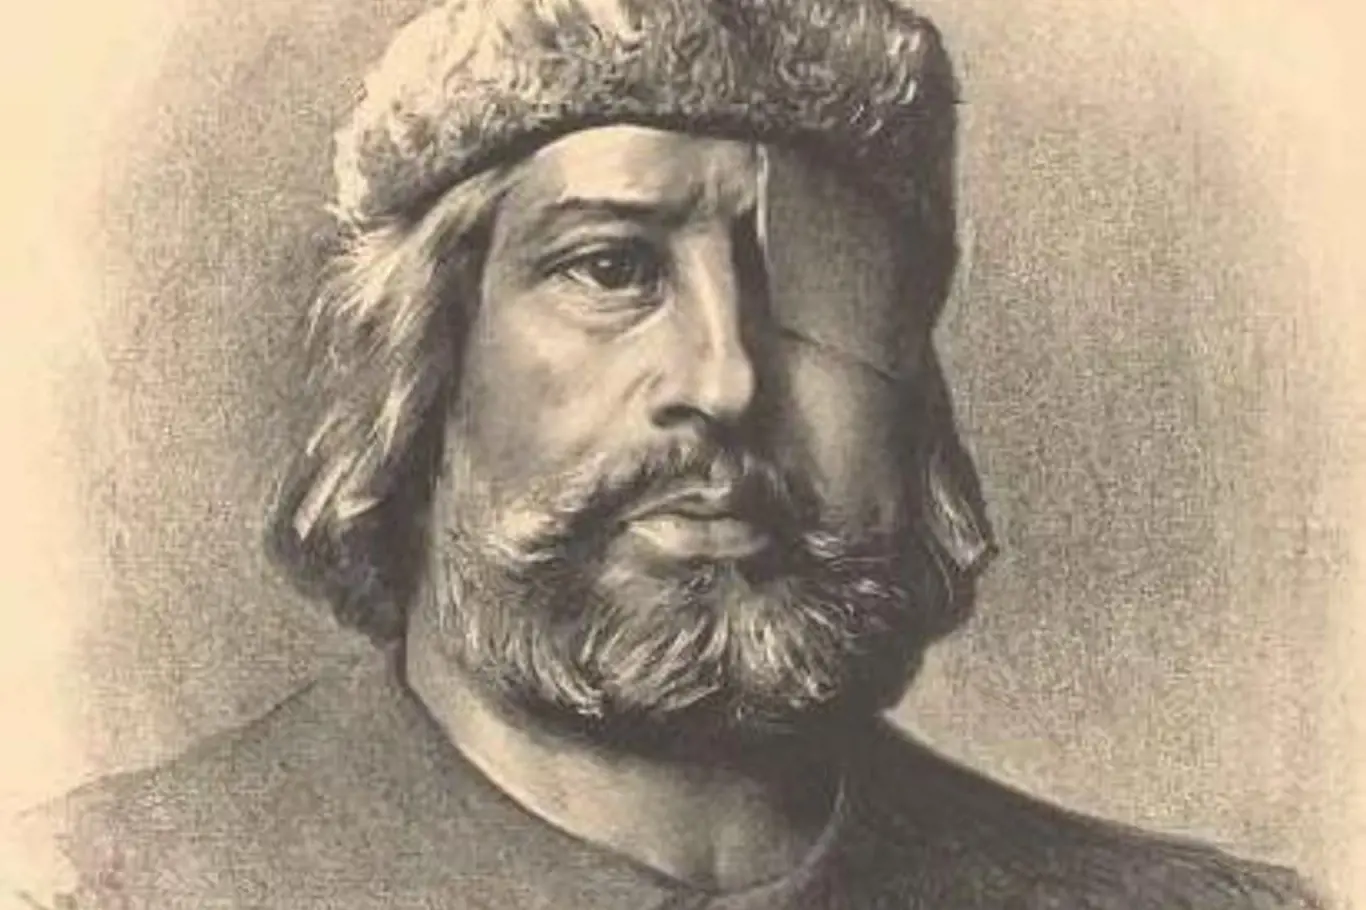 Dnes je Jan Žižka z Trocnova považován za jednu z nejkontroverznějších postav českých dějin.